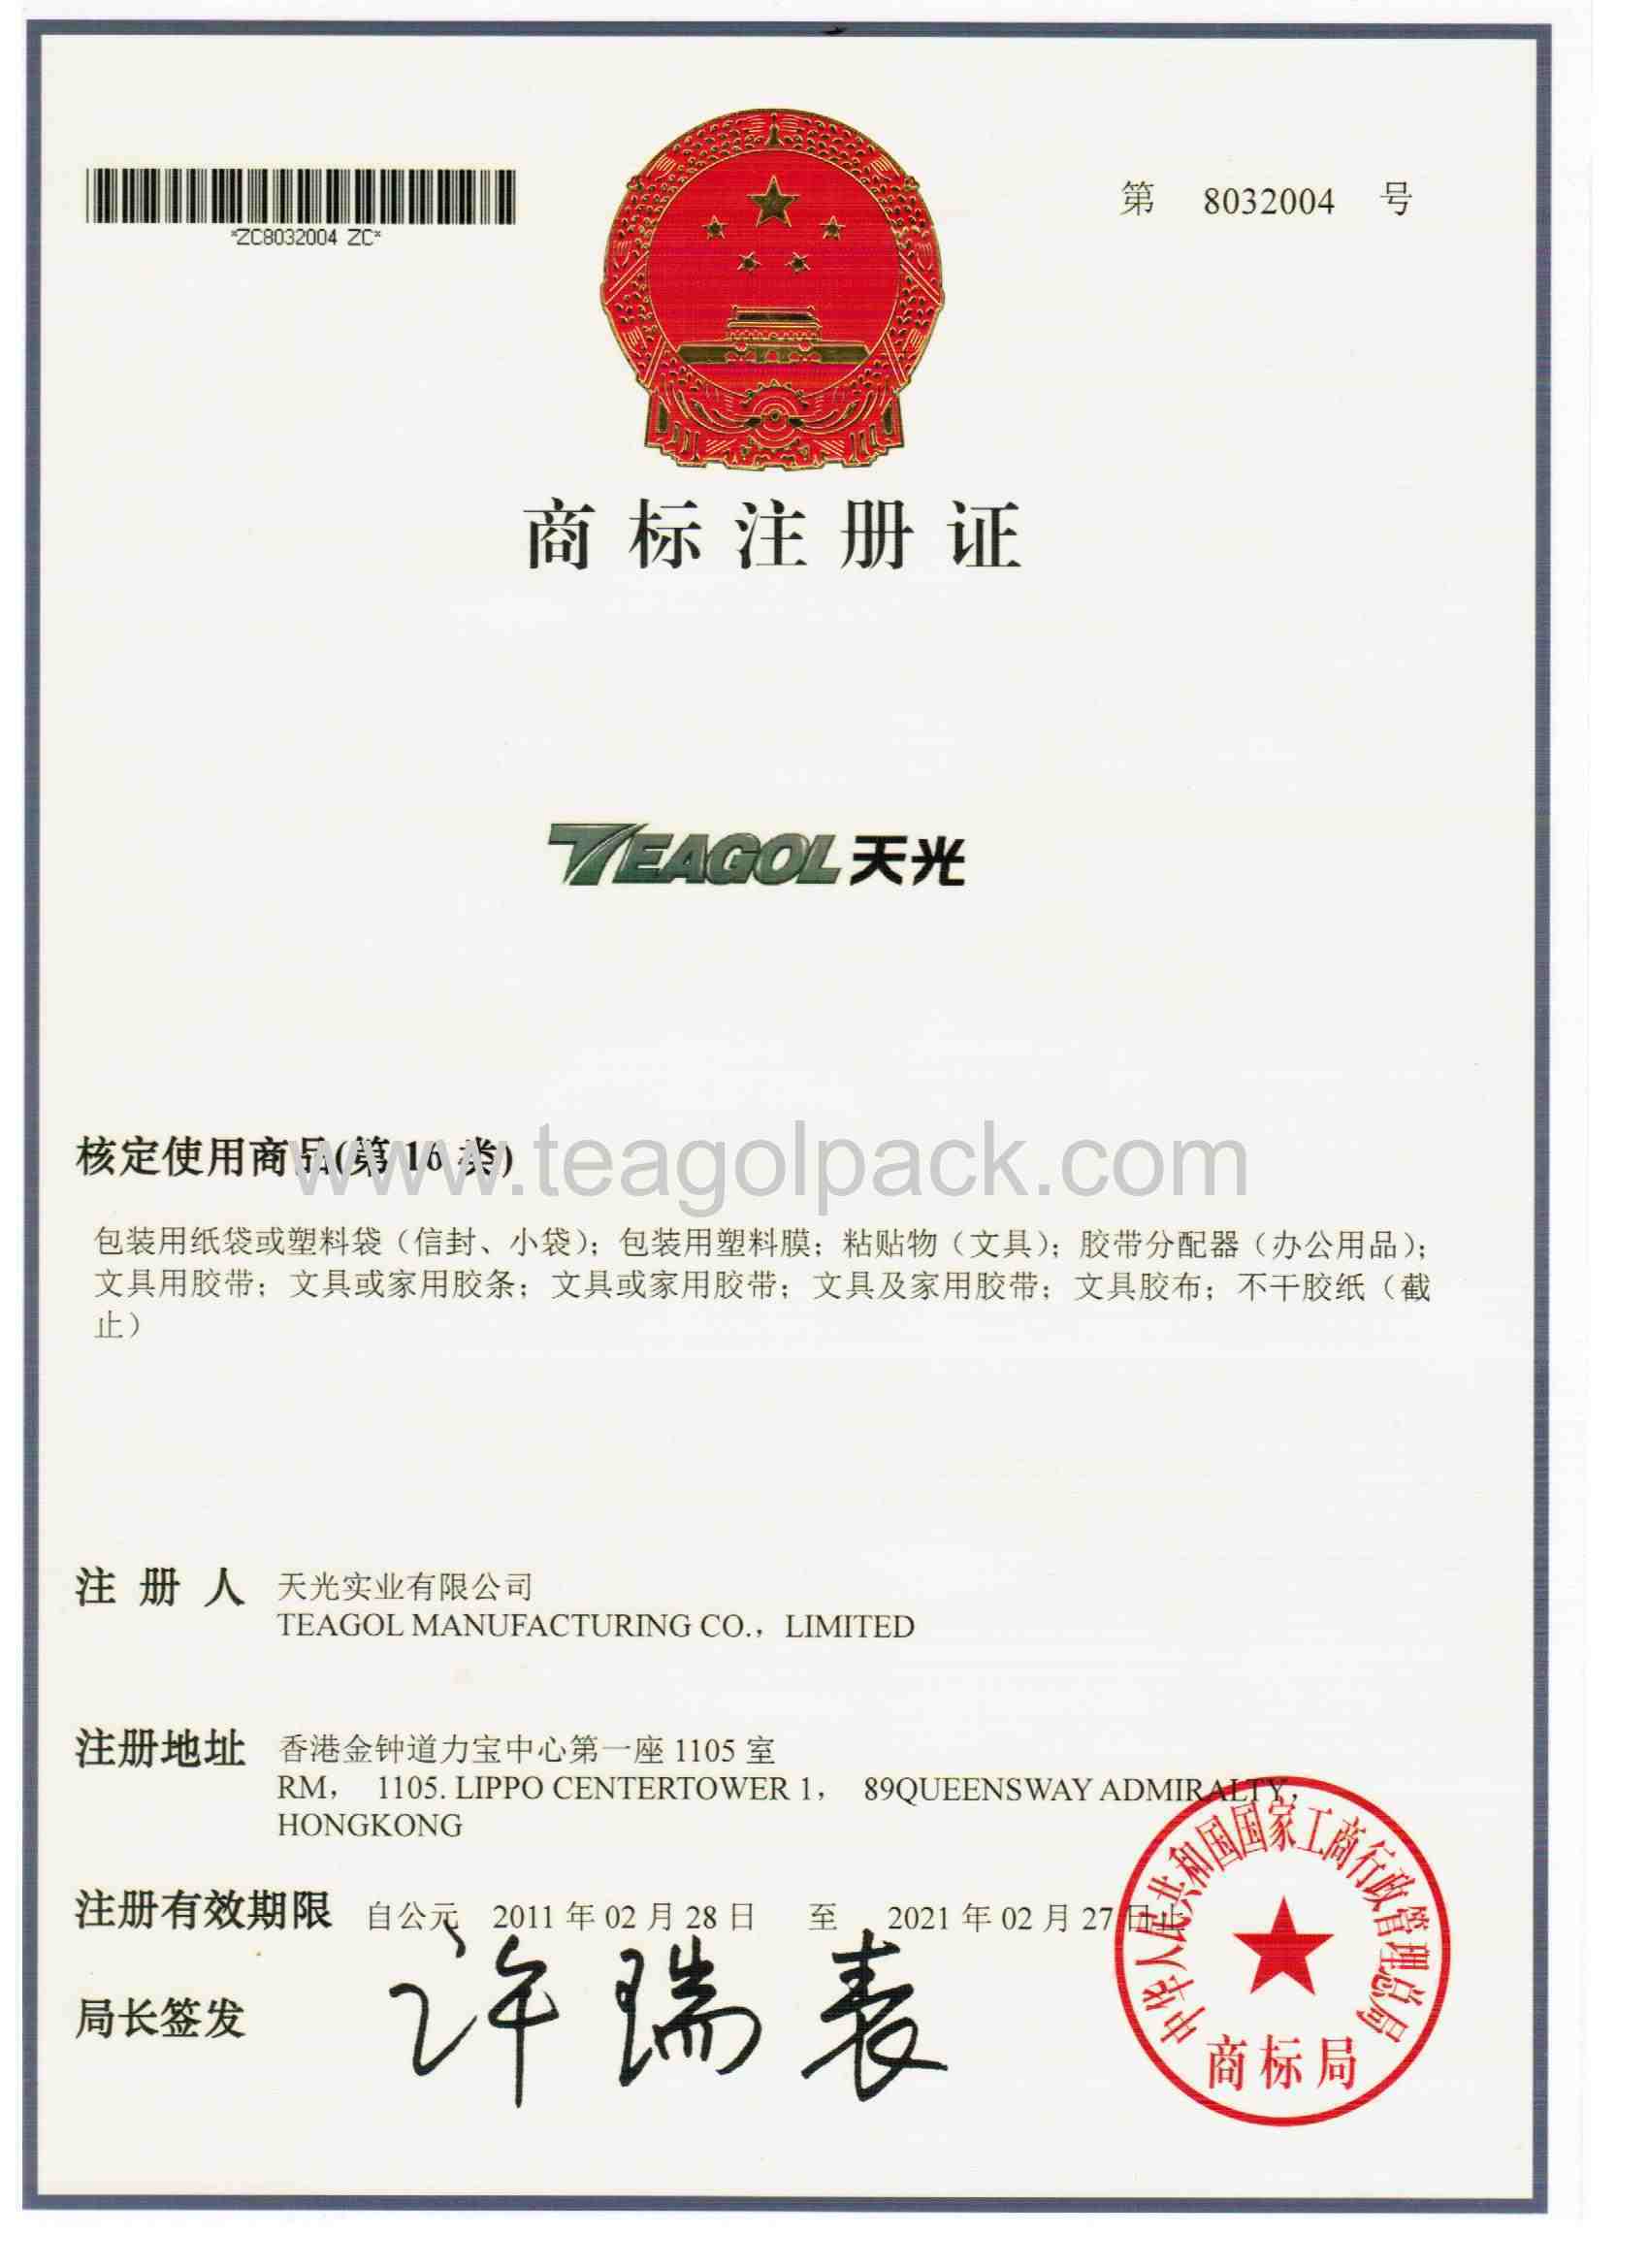 Teagol Logo